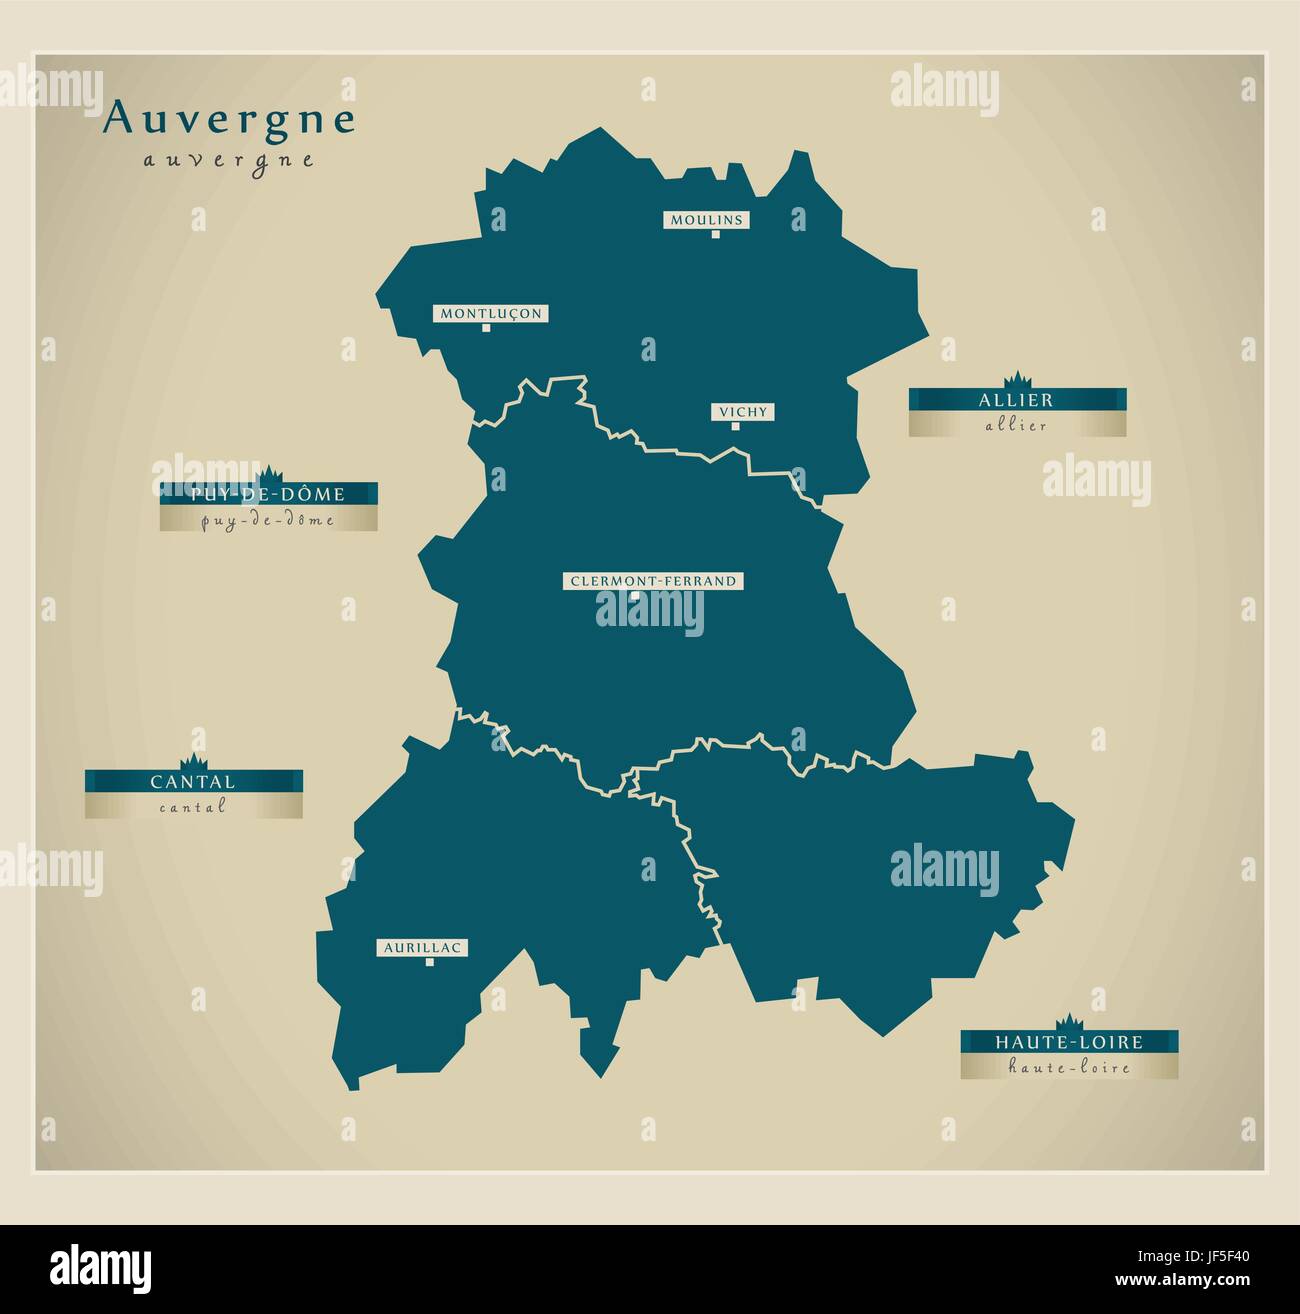 Carte moderne - Auvergne fr Illustration de Vecteur